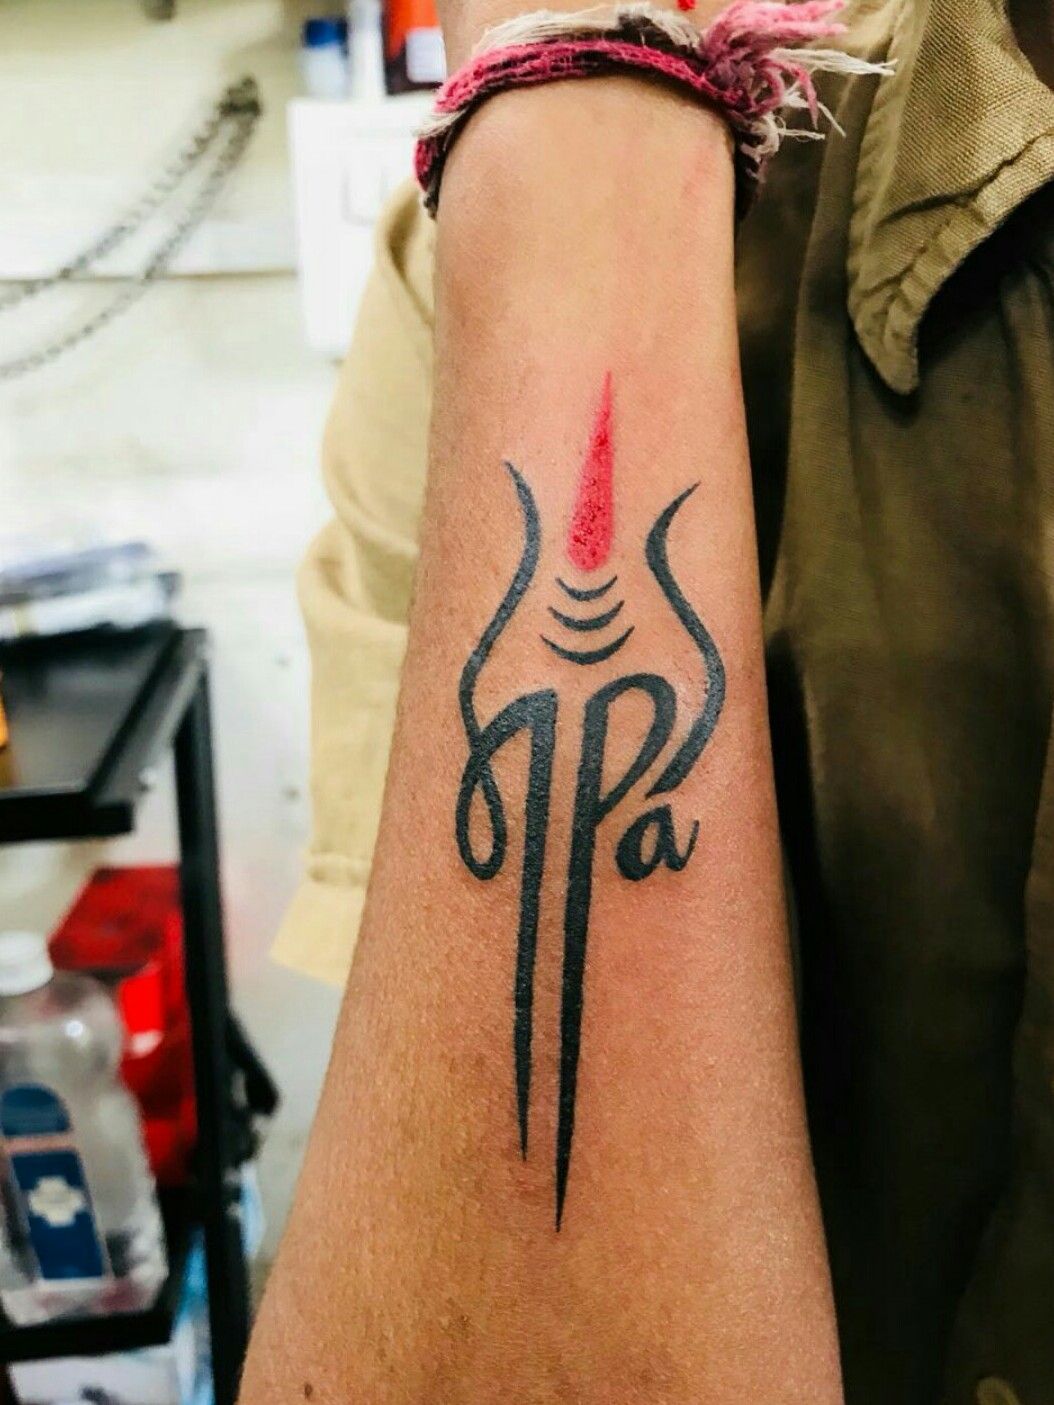 ARJUN on Instagram OM  Trishul  Maa tattoo  KingInk   arjunnnraj         tattoo tattoos tattooed girlswithtattoos tattooartist  tattooart